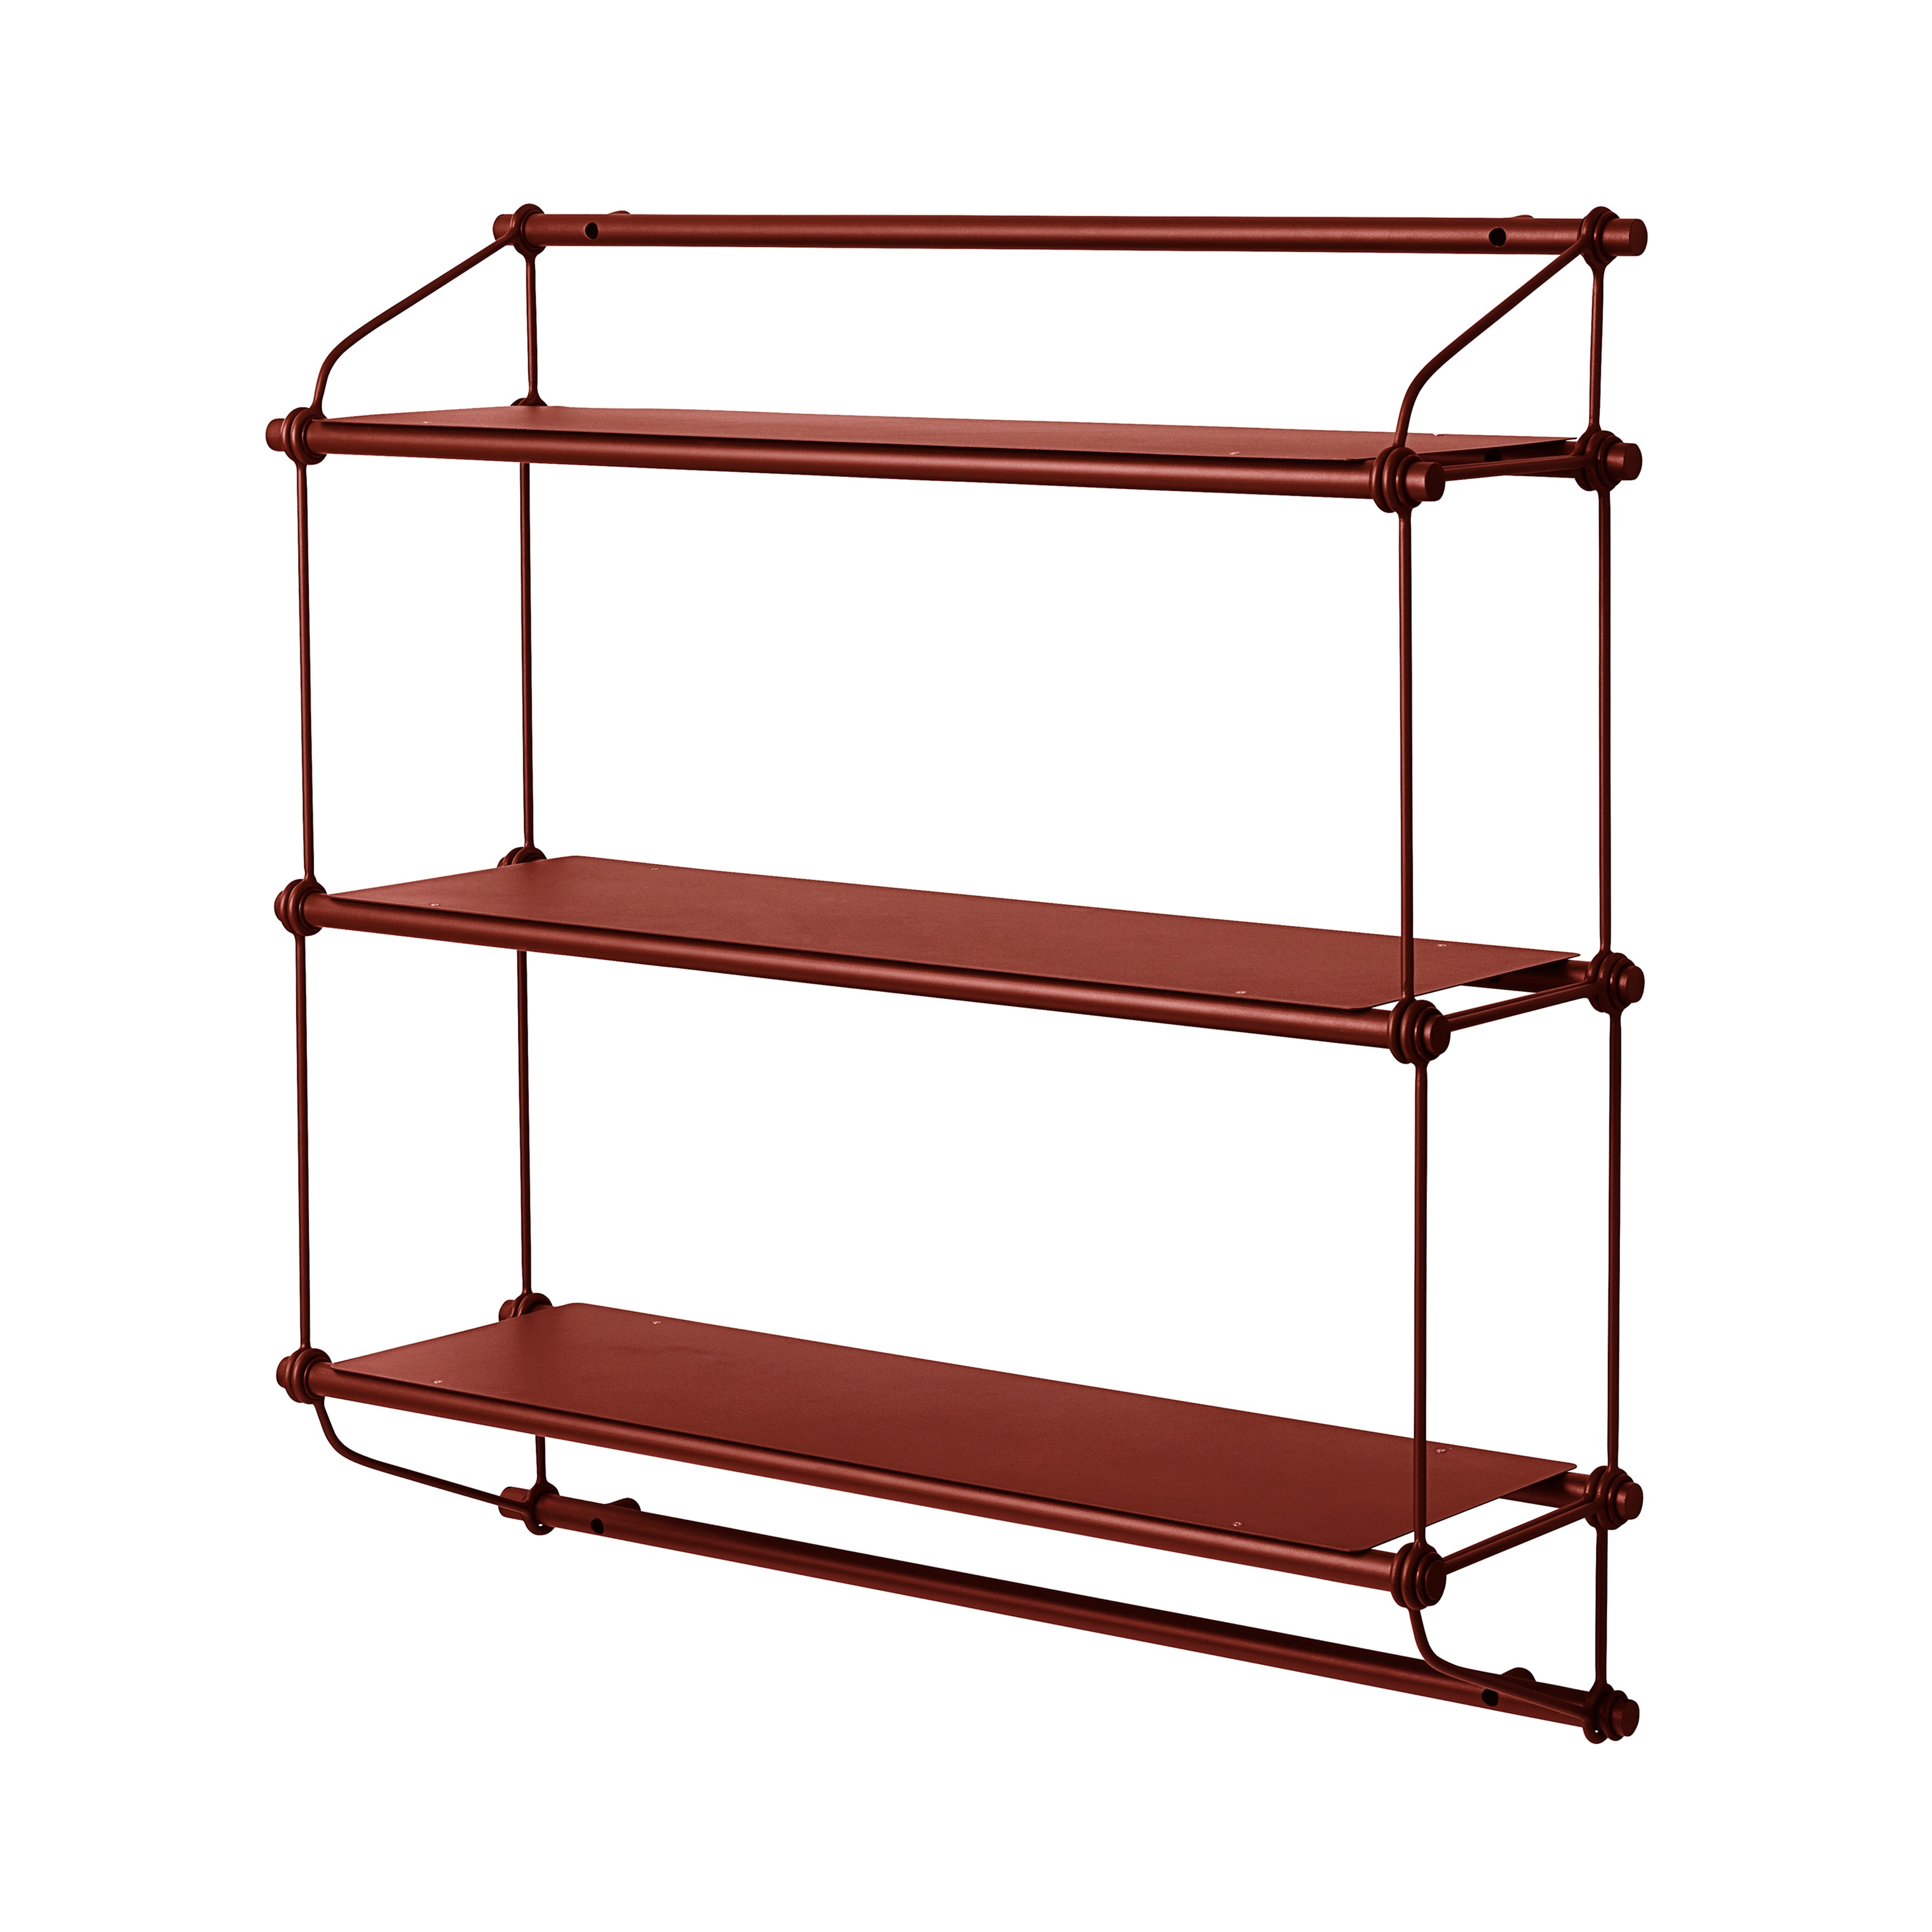 Parade Shelf: Oxide Red + 3 Shelves